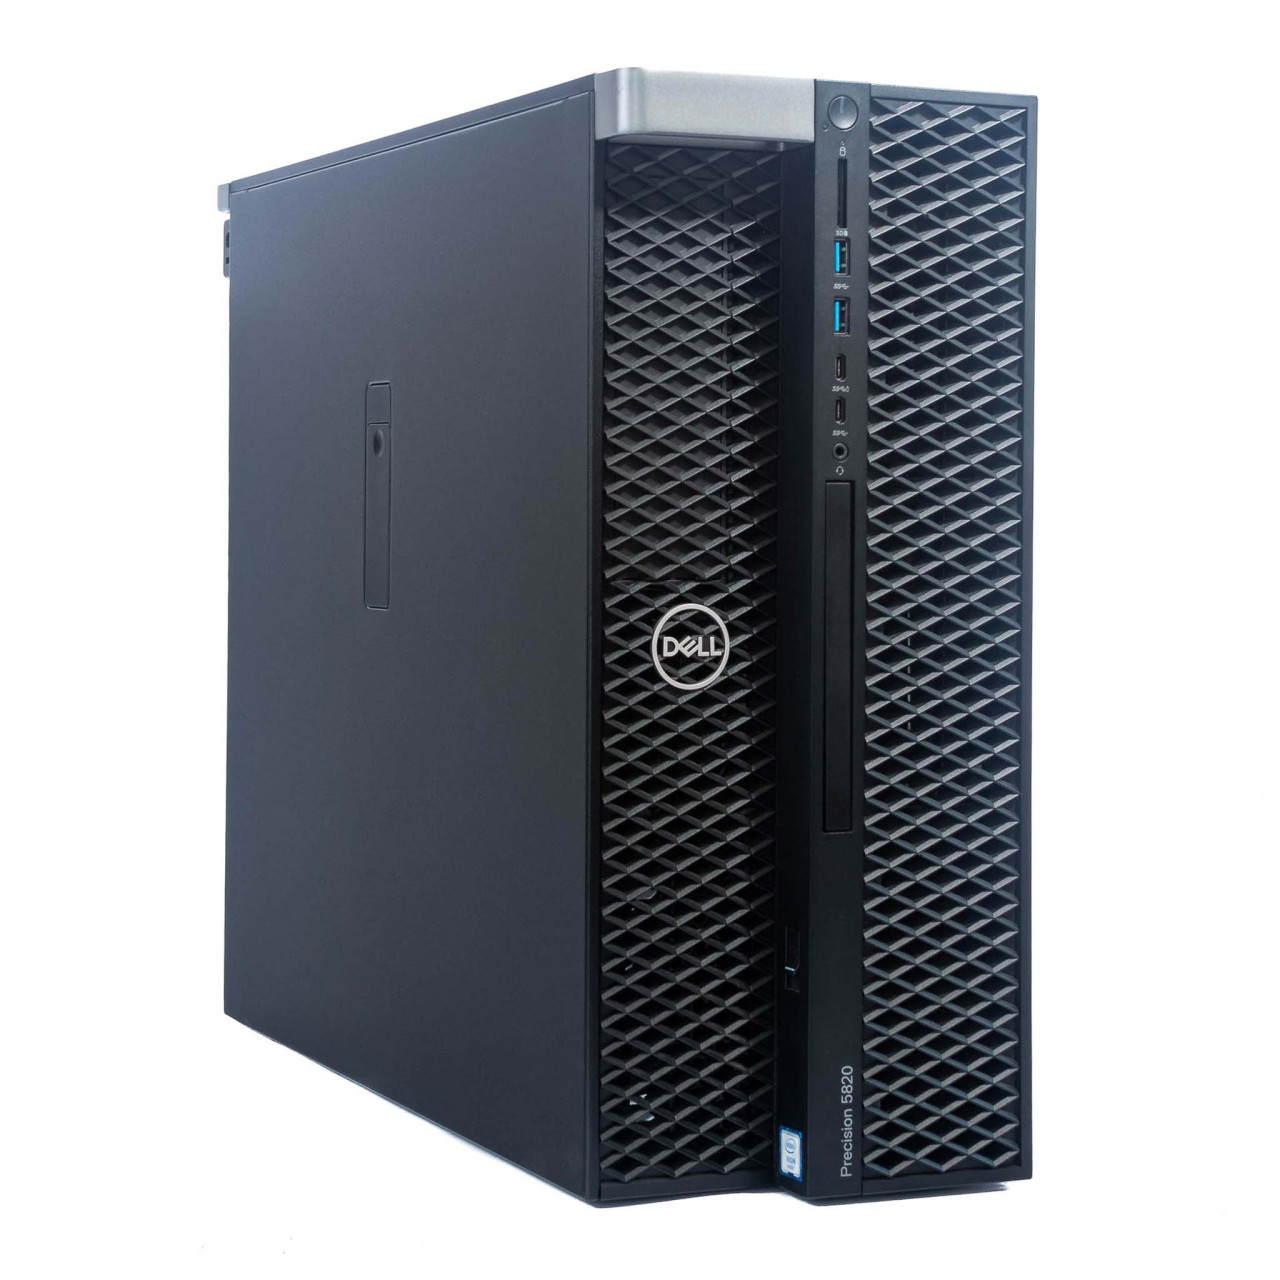 Dell Precision Tower 5820 A- | Intel Xeon W-2133 | 16GB RAM DDR4 | 256GB SSD + 500GB HDD